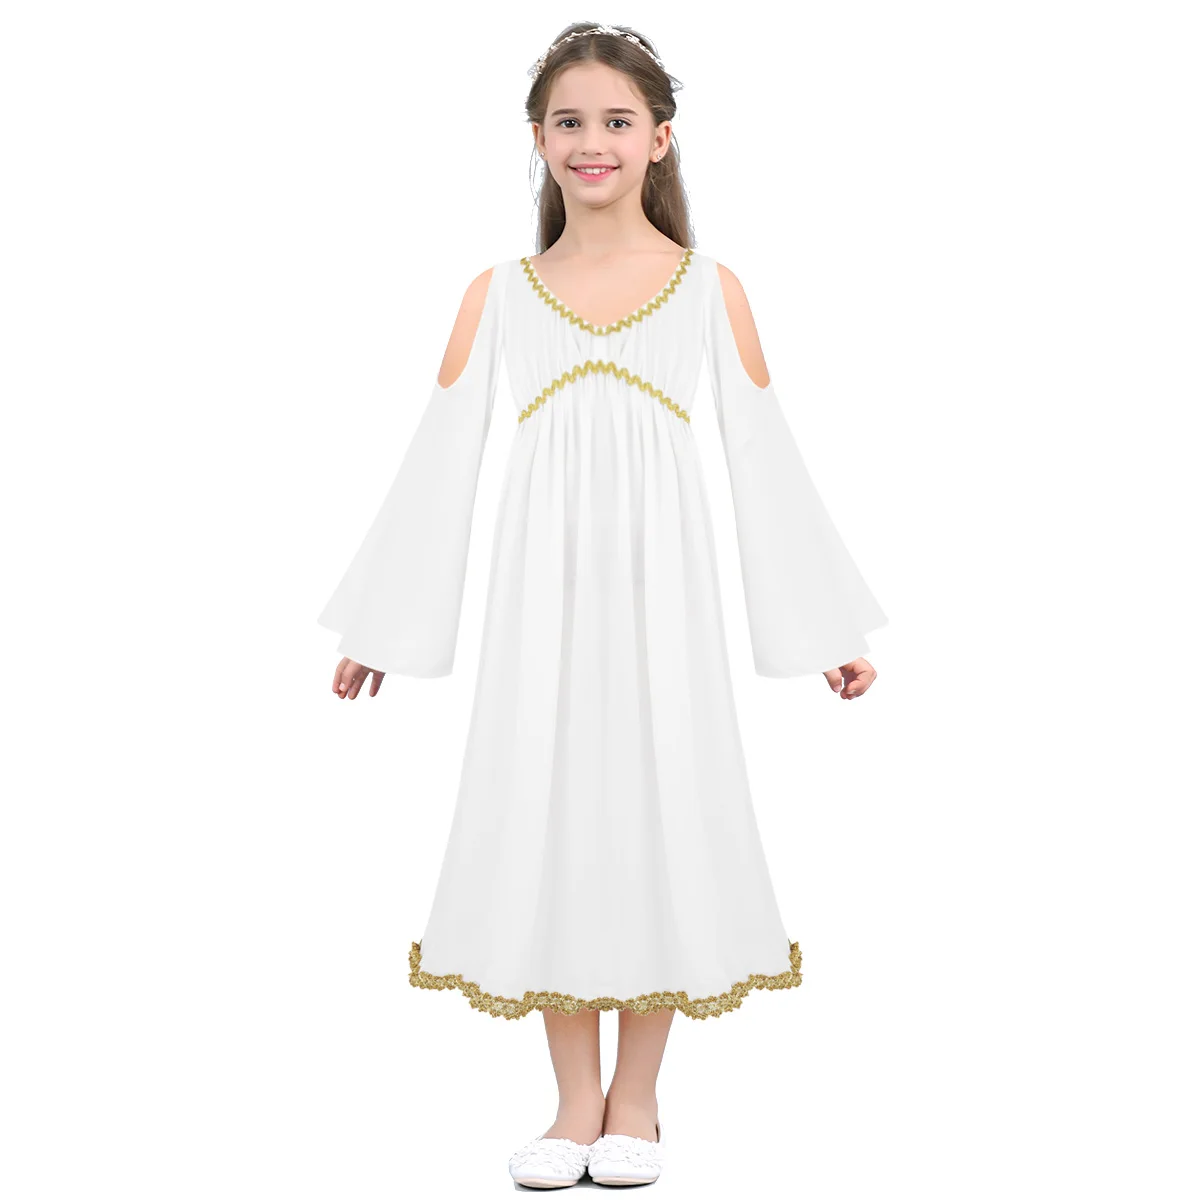 Детское платье в греческом стиле для девочек Детский карнавальный костюм платье для ролевых игр с длинными рукавами и v-образным вырезом, длинное платье с золотой отделкой